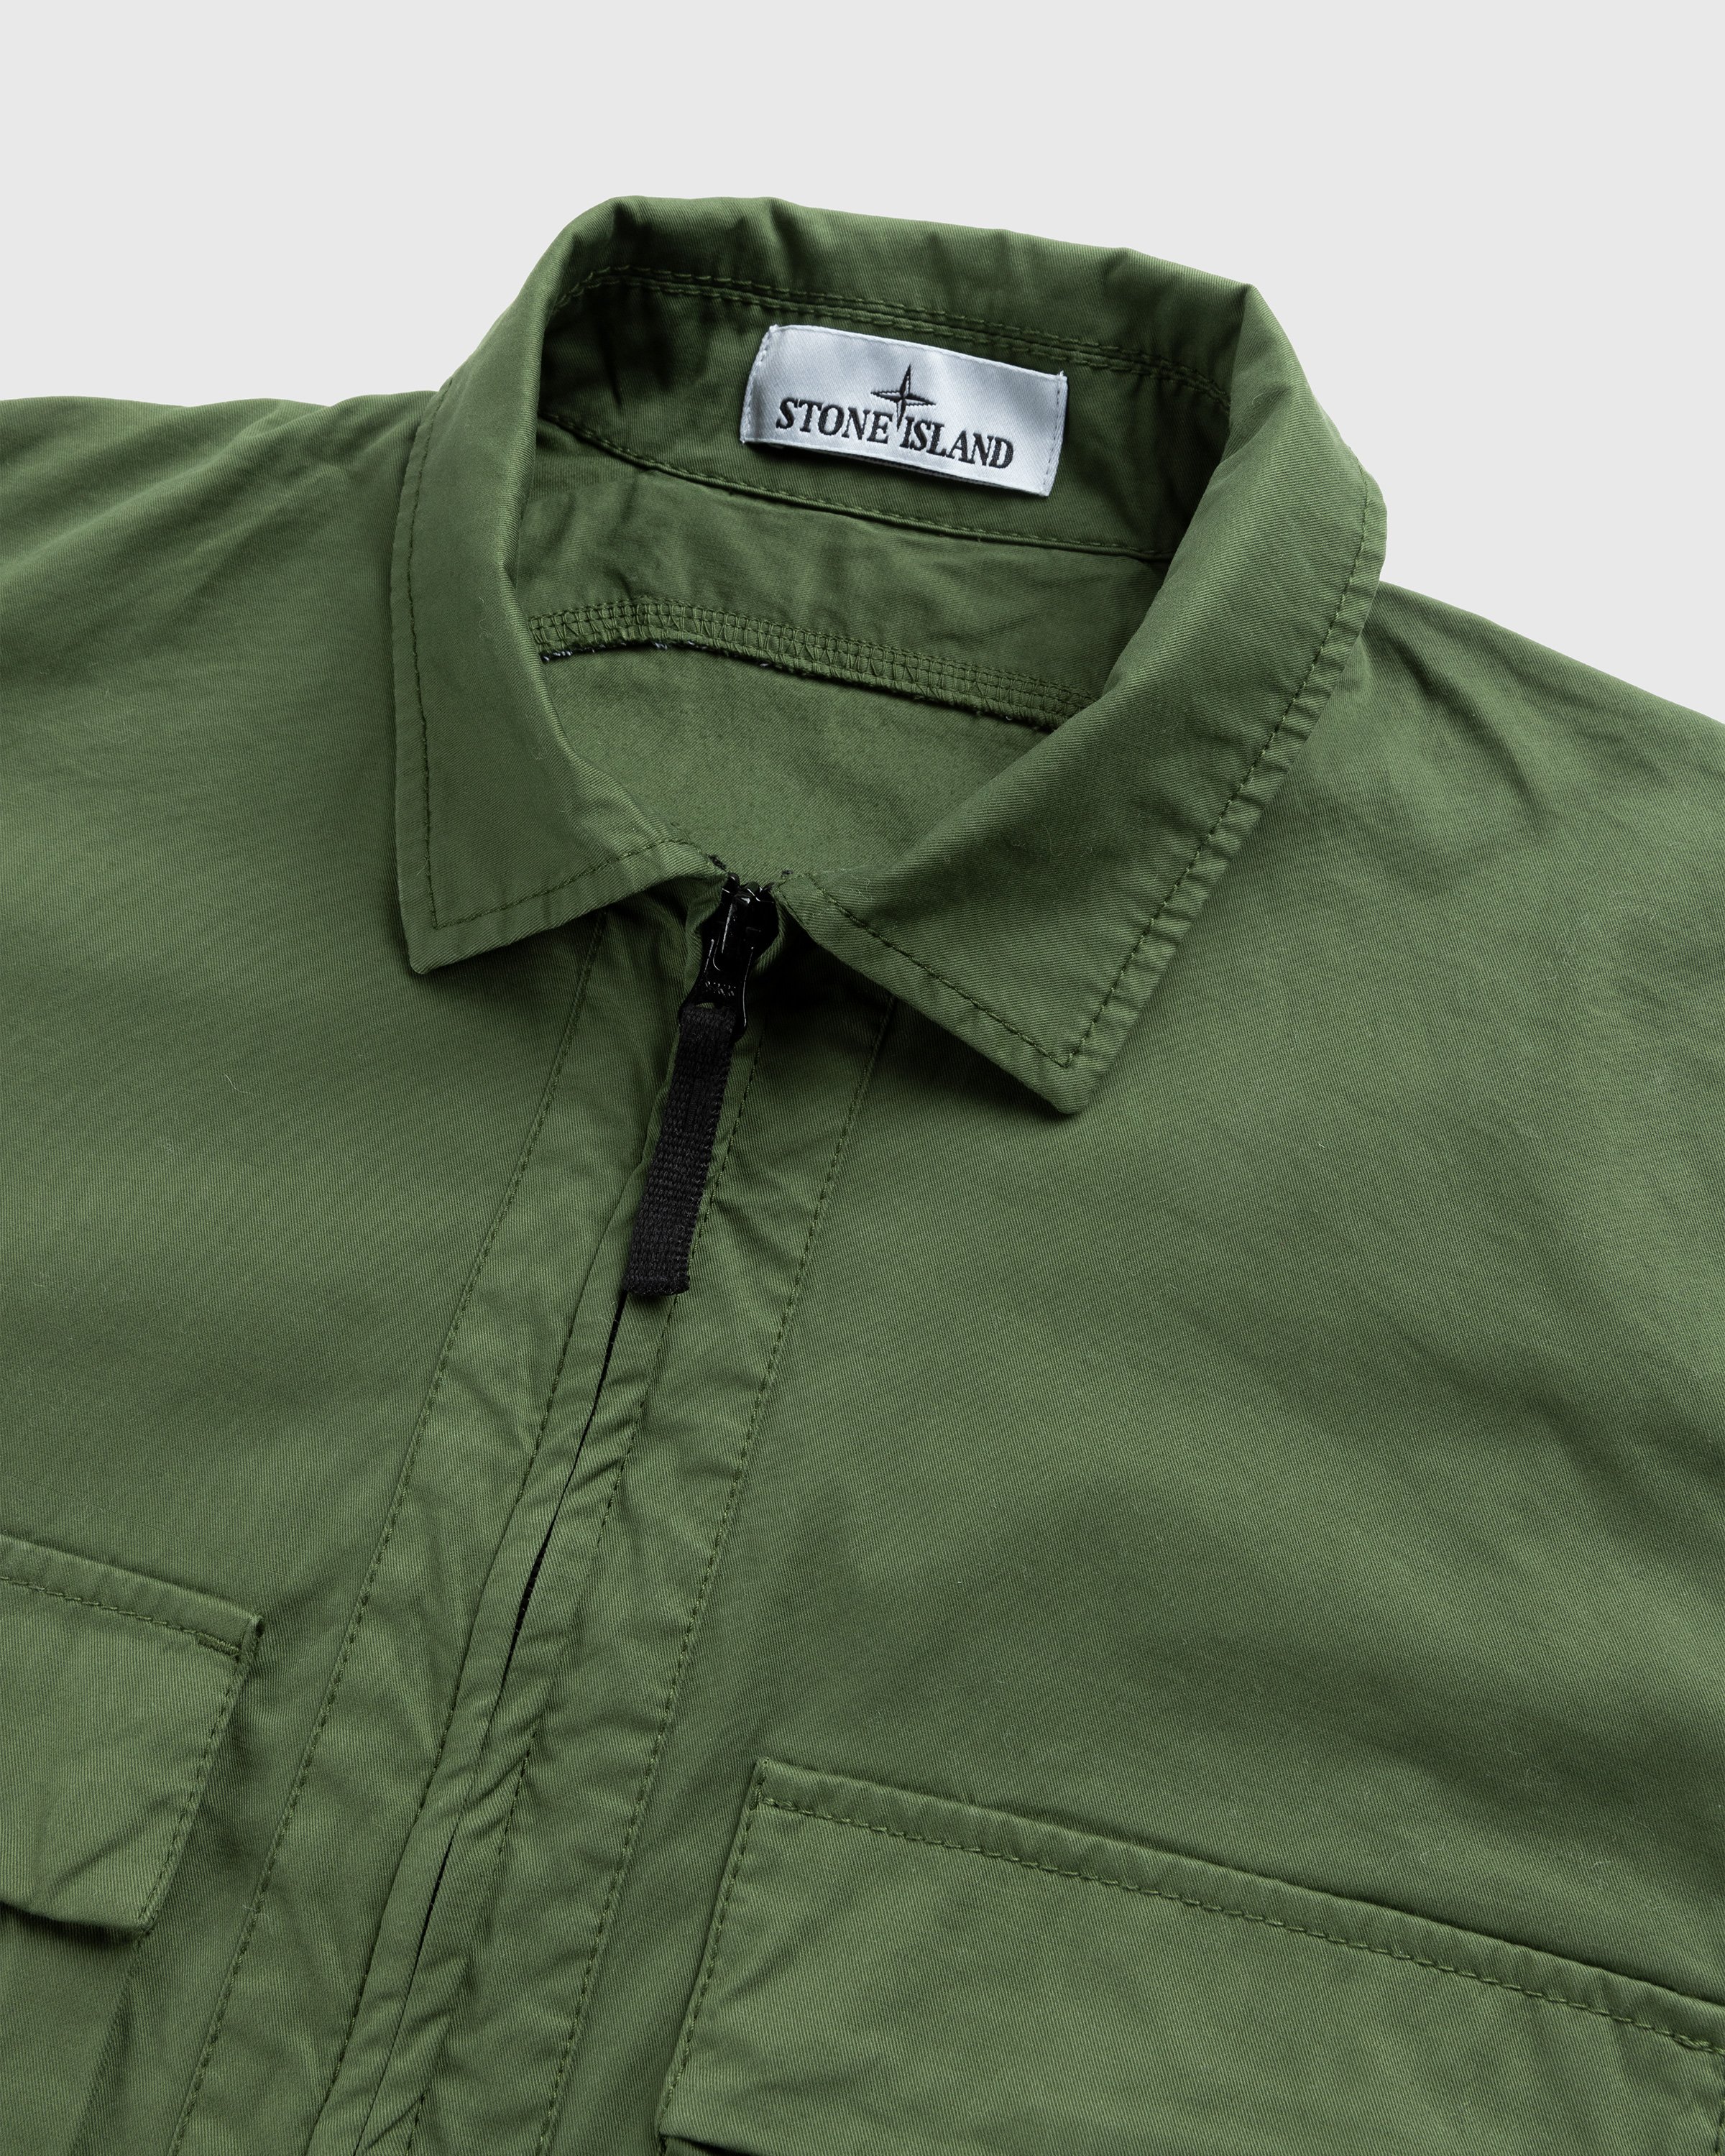 Stone Island - Garment-Dyed Cotton Overshirt Olive - Clothing - Green - Image 3